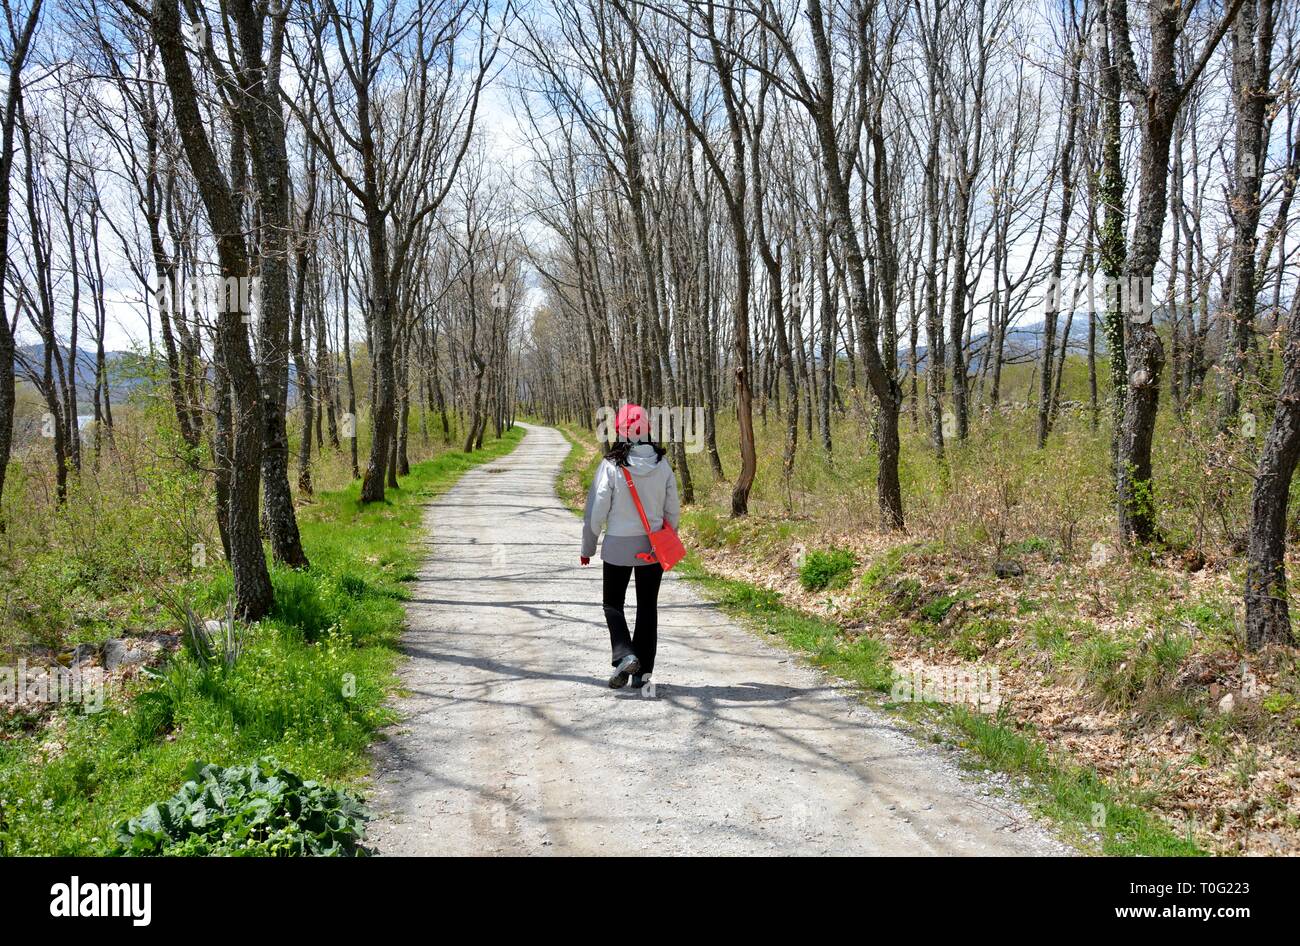 Una persona caminando solos en el bosque Foto de stock